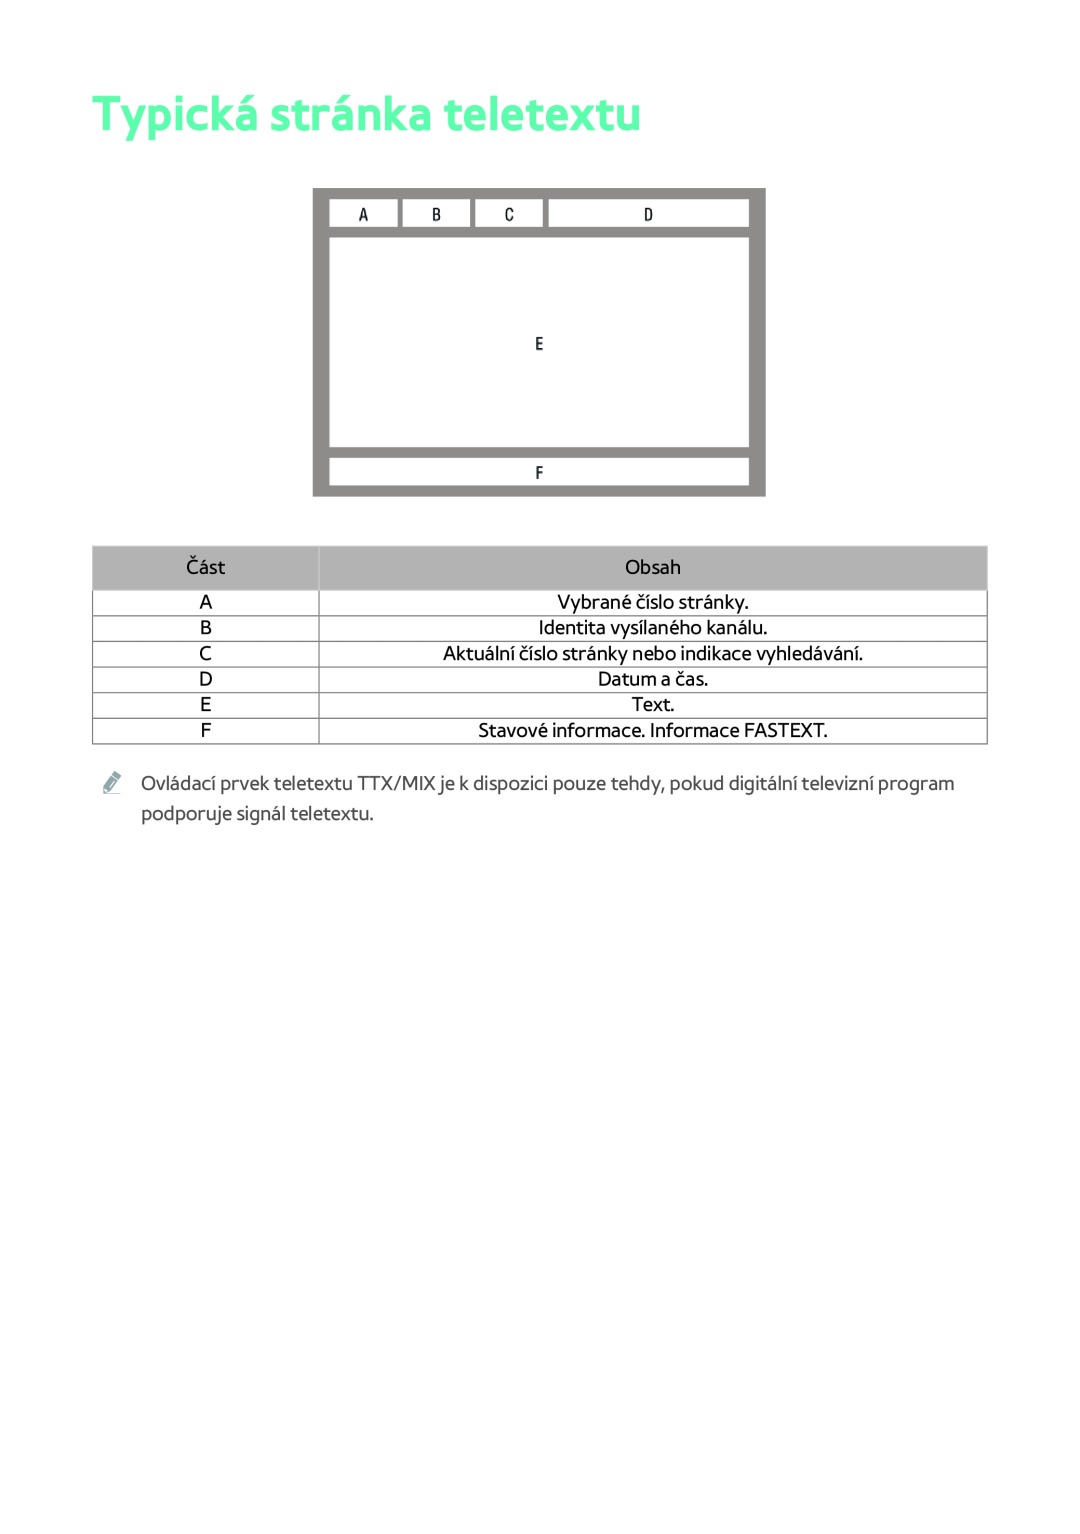 Samsung BD-F8500/EN, BD-F8900/EN, BD-F6900/EN manual Typická stránka teletextu, Část, Obsah, Vybrané číslo stránky, Text 